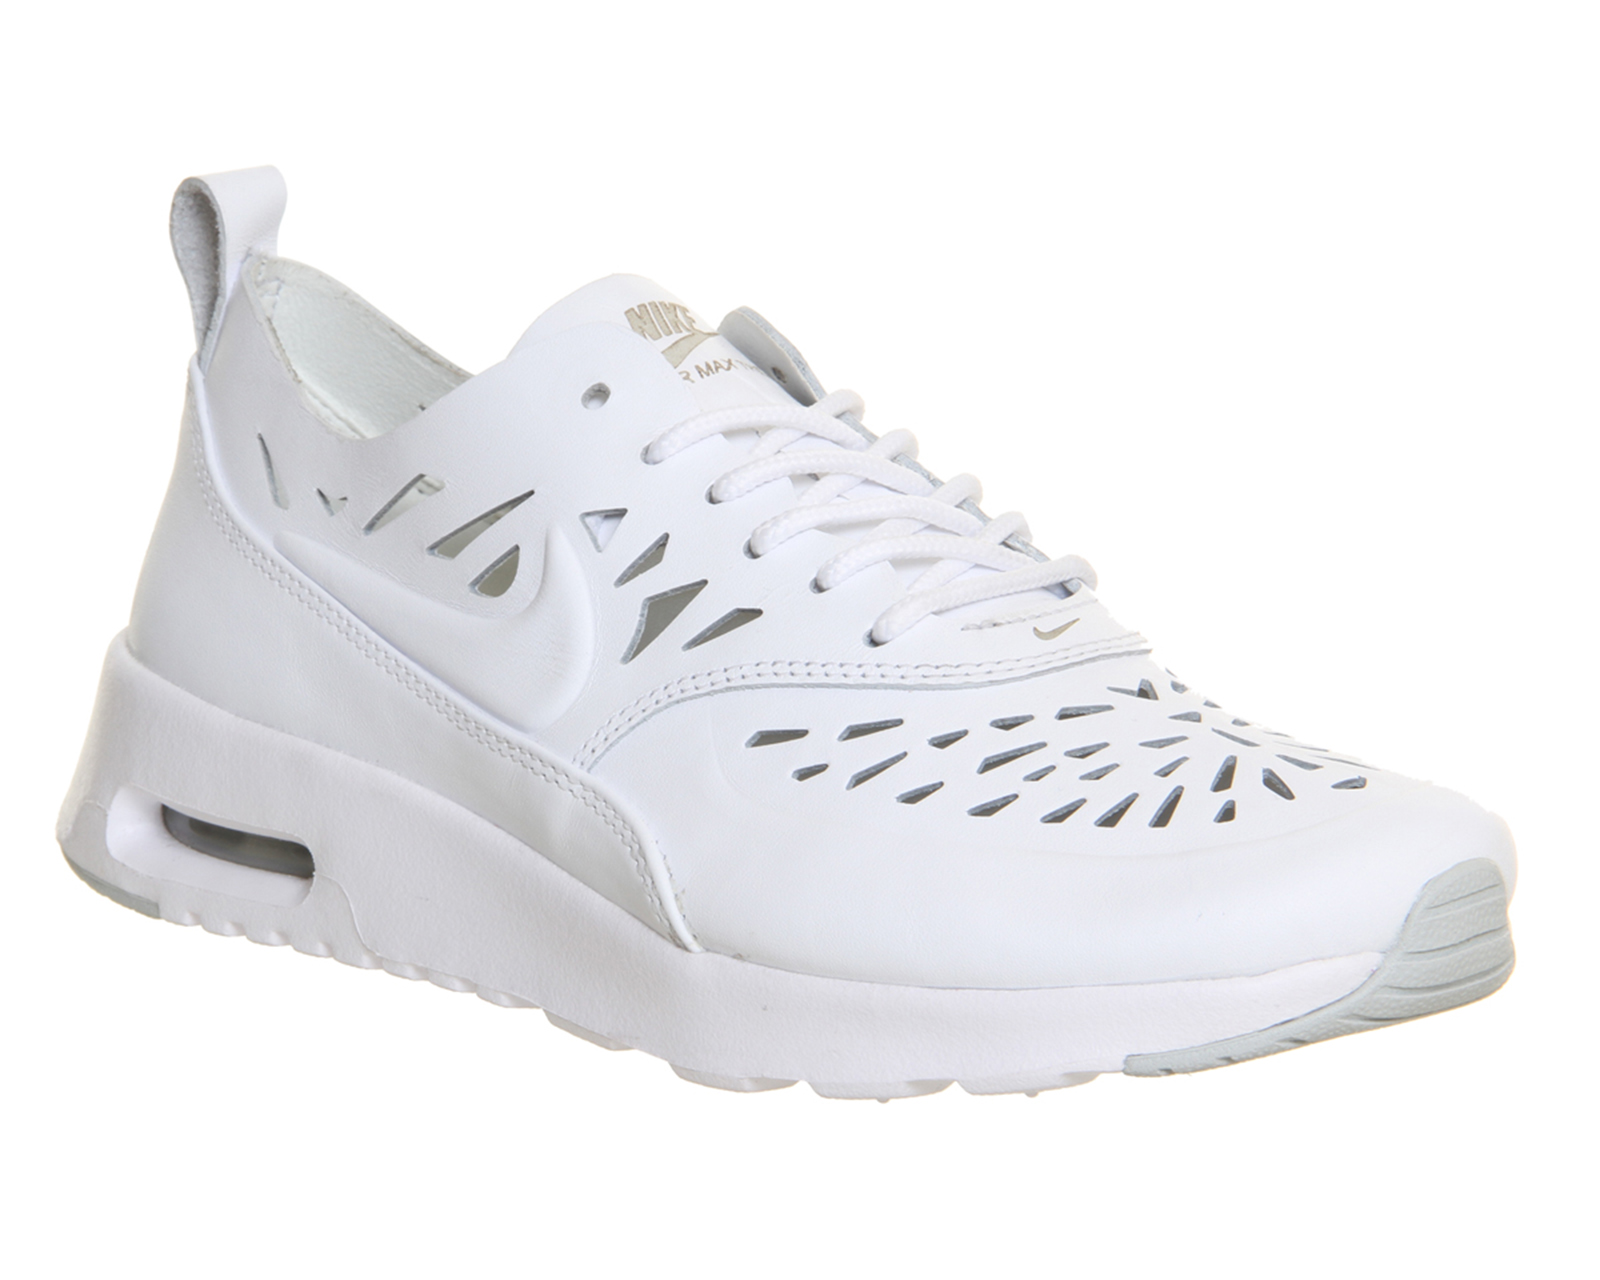 NikeAir Max TheaCut Out White Grey